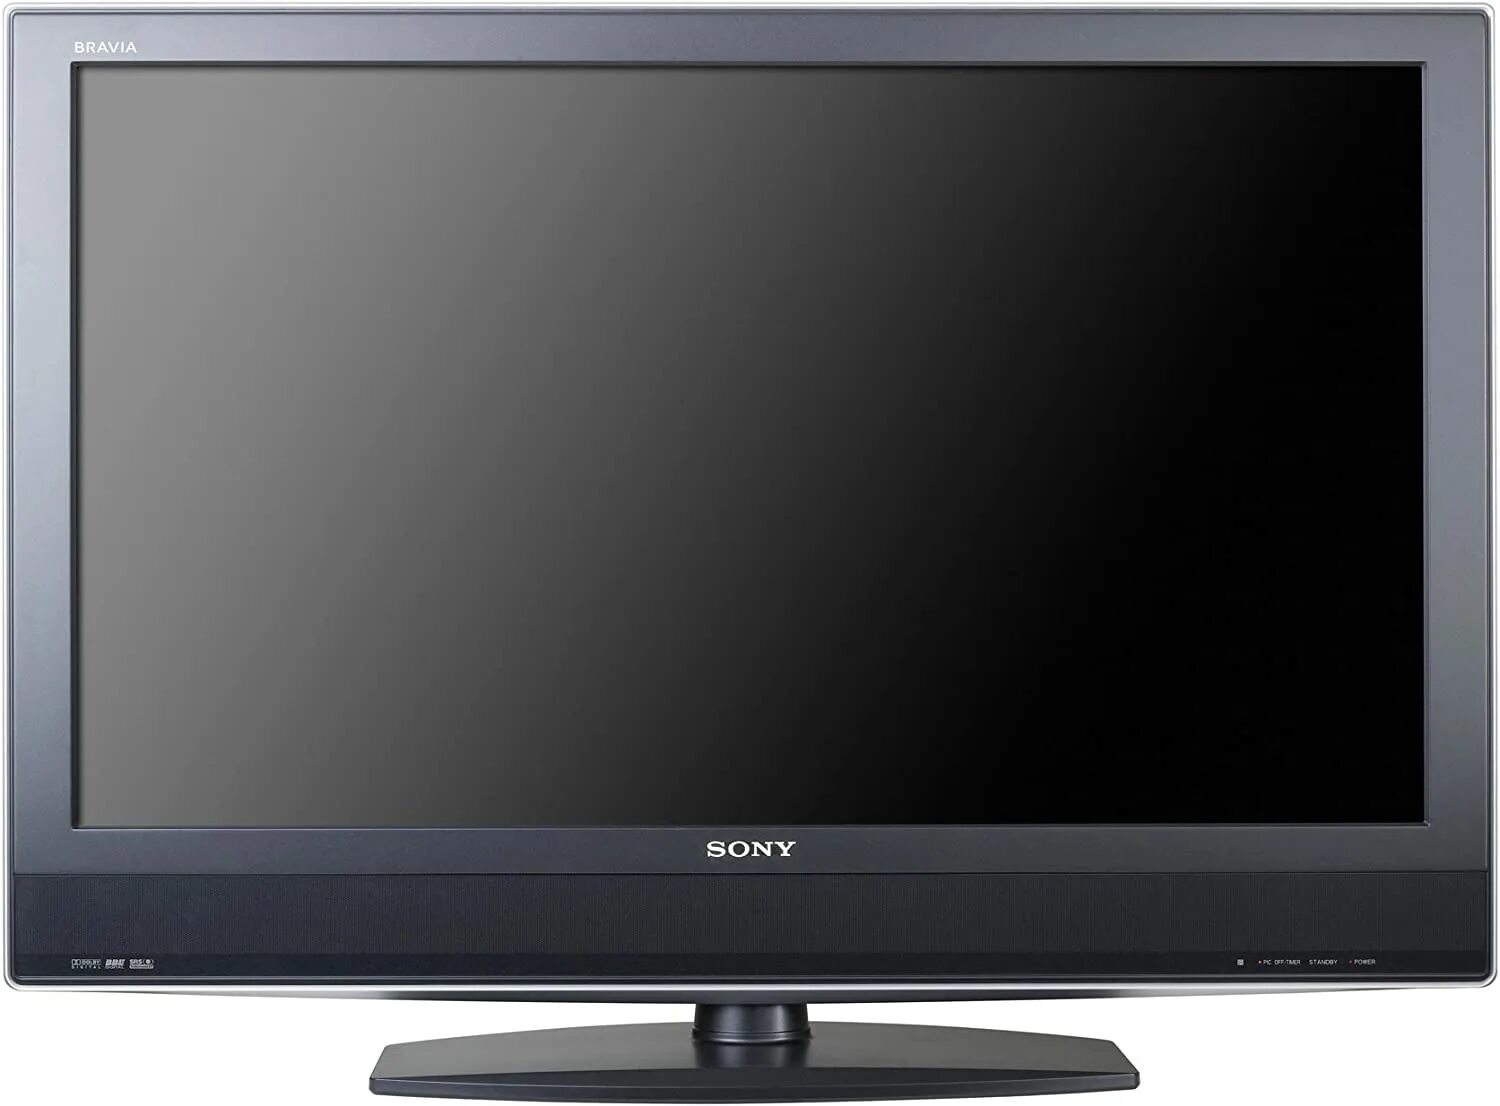 Телевизор мигает 6 раз. Sony Bravia KDL-32s2010. Телевизор Sony Bravia 2010. Сони бравиа 32 2010. Sony Bravia 32 LCD.